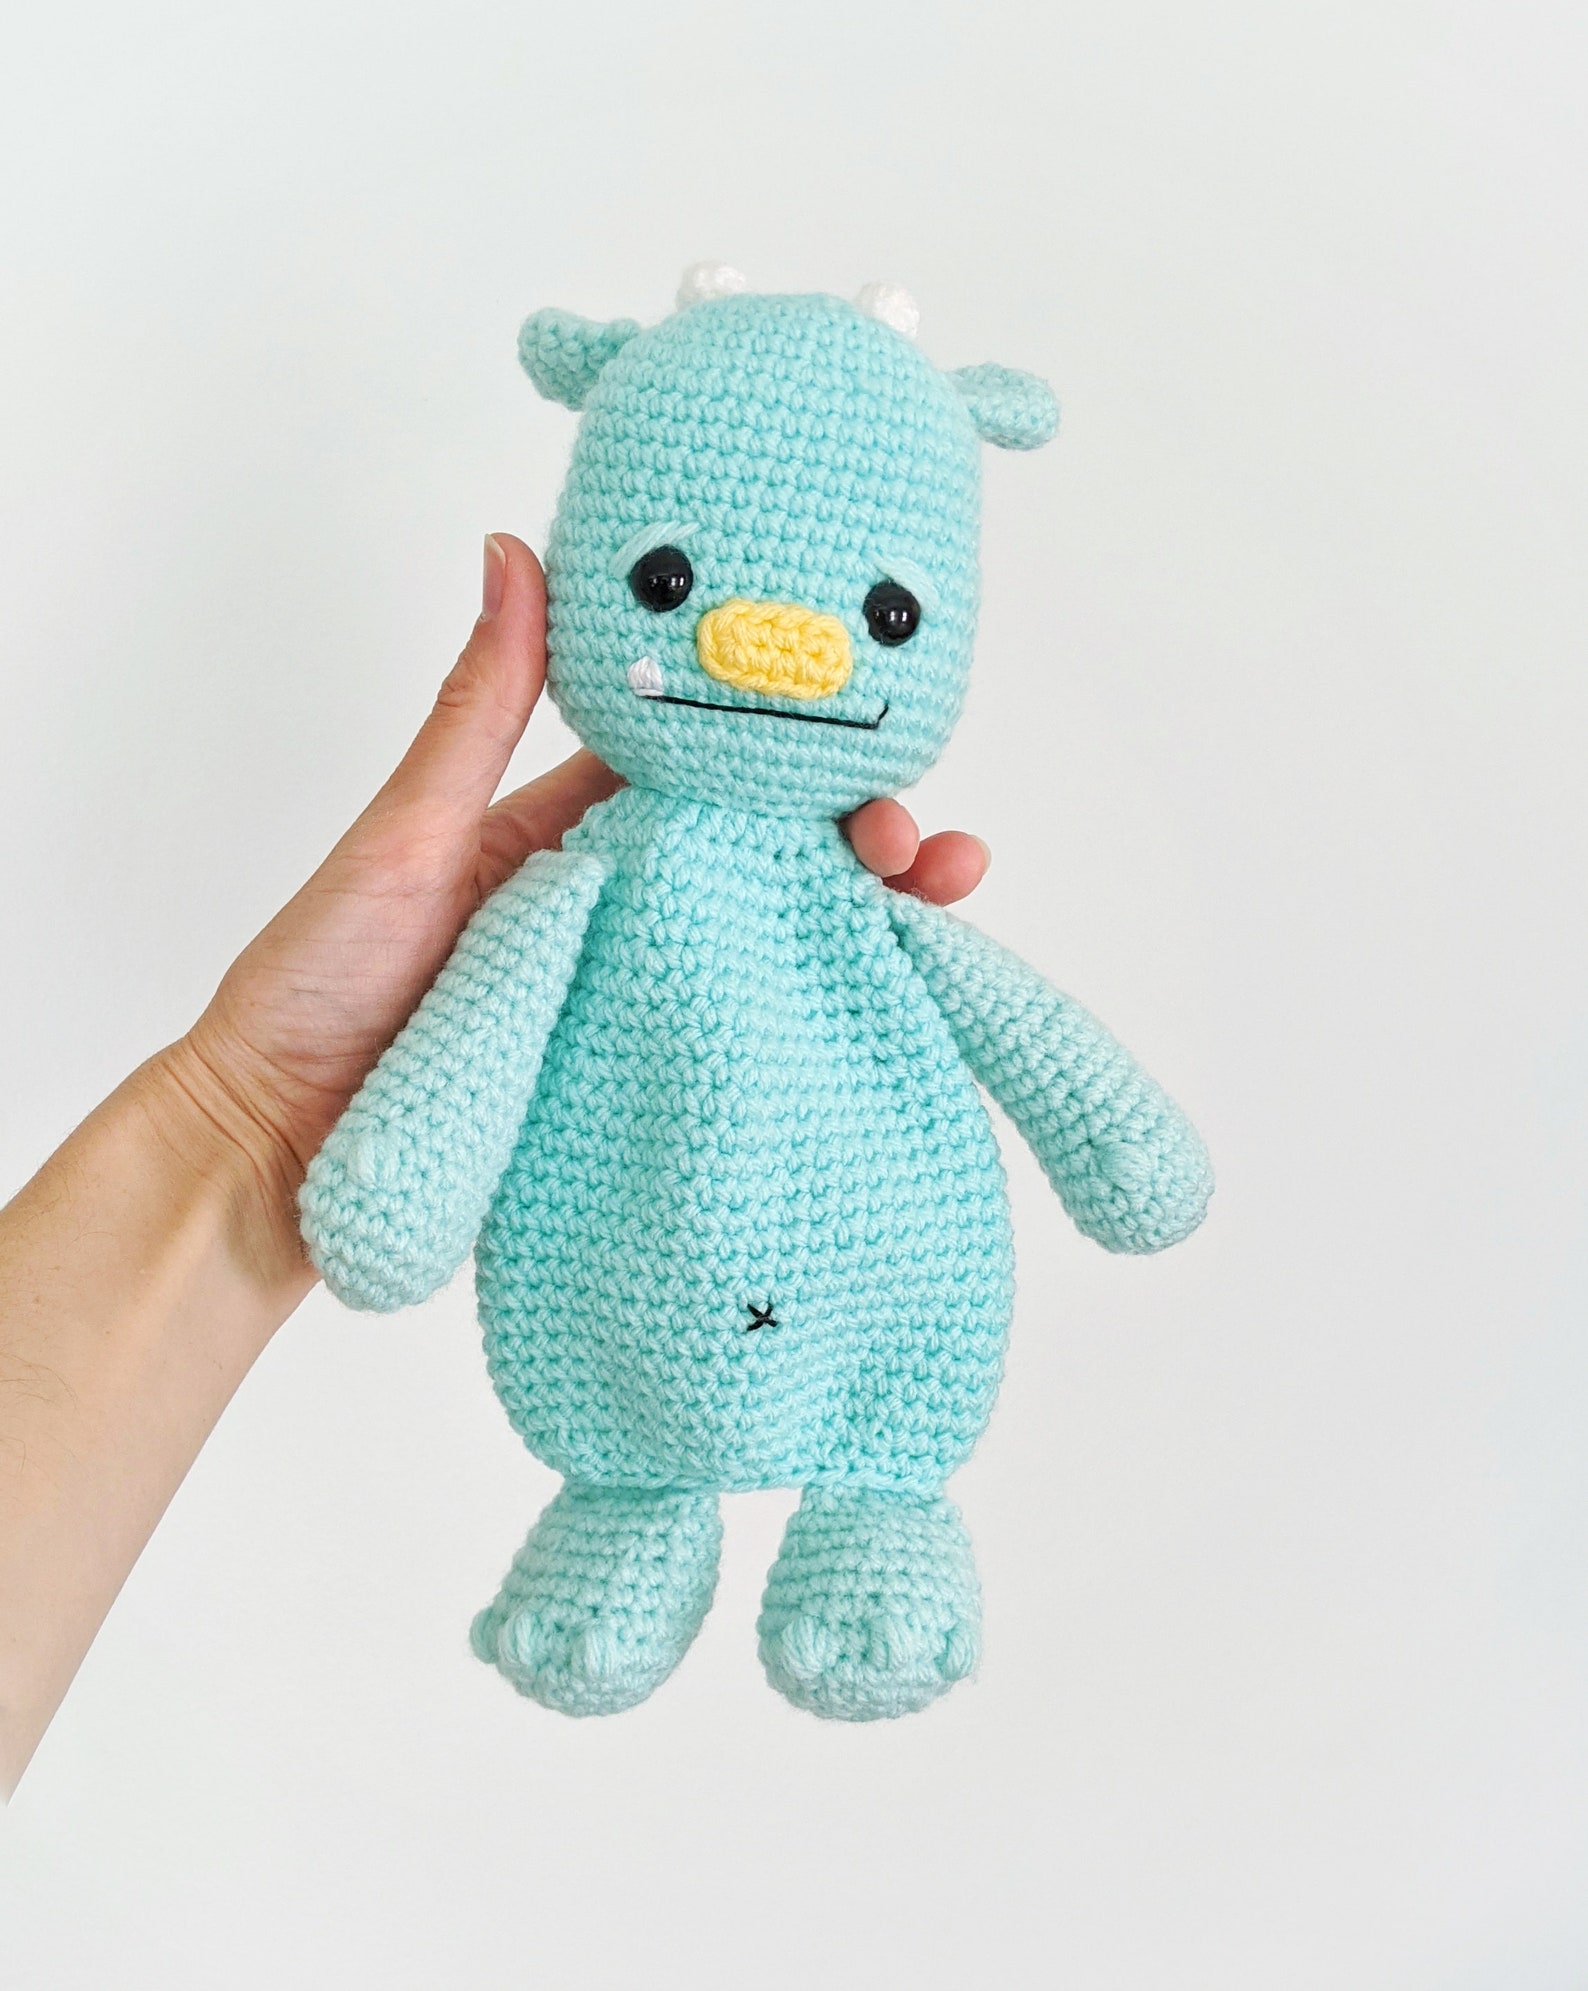 CROCHET PATTERN: Crochet Lovey Monster Snuggler Amigurumi - Etsy